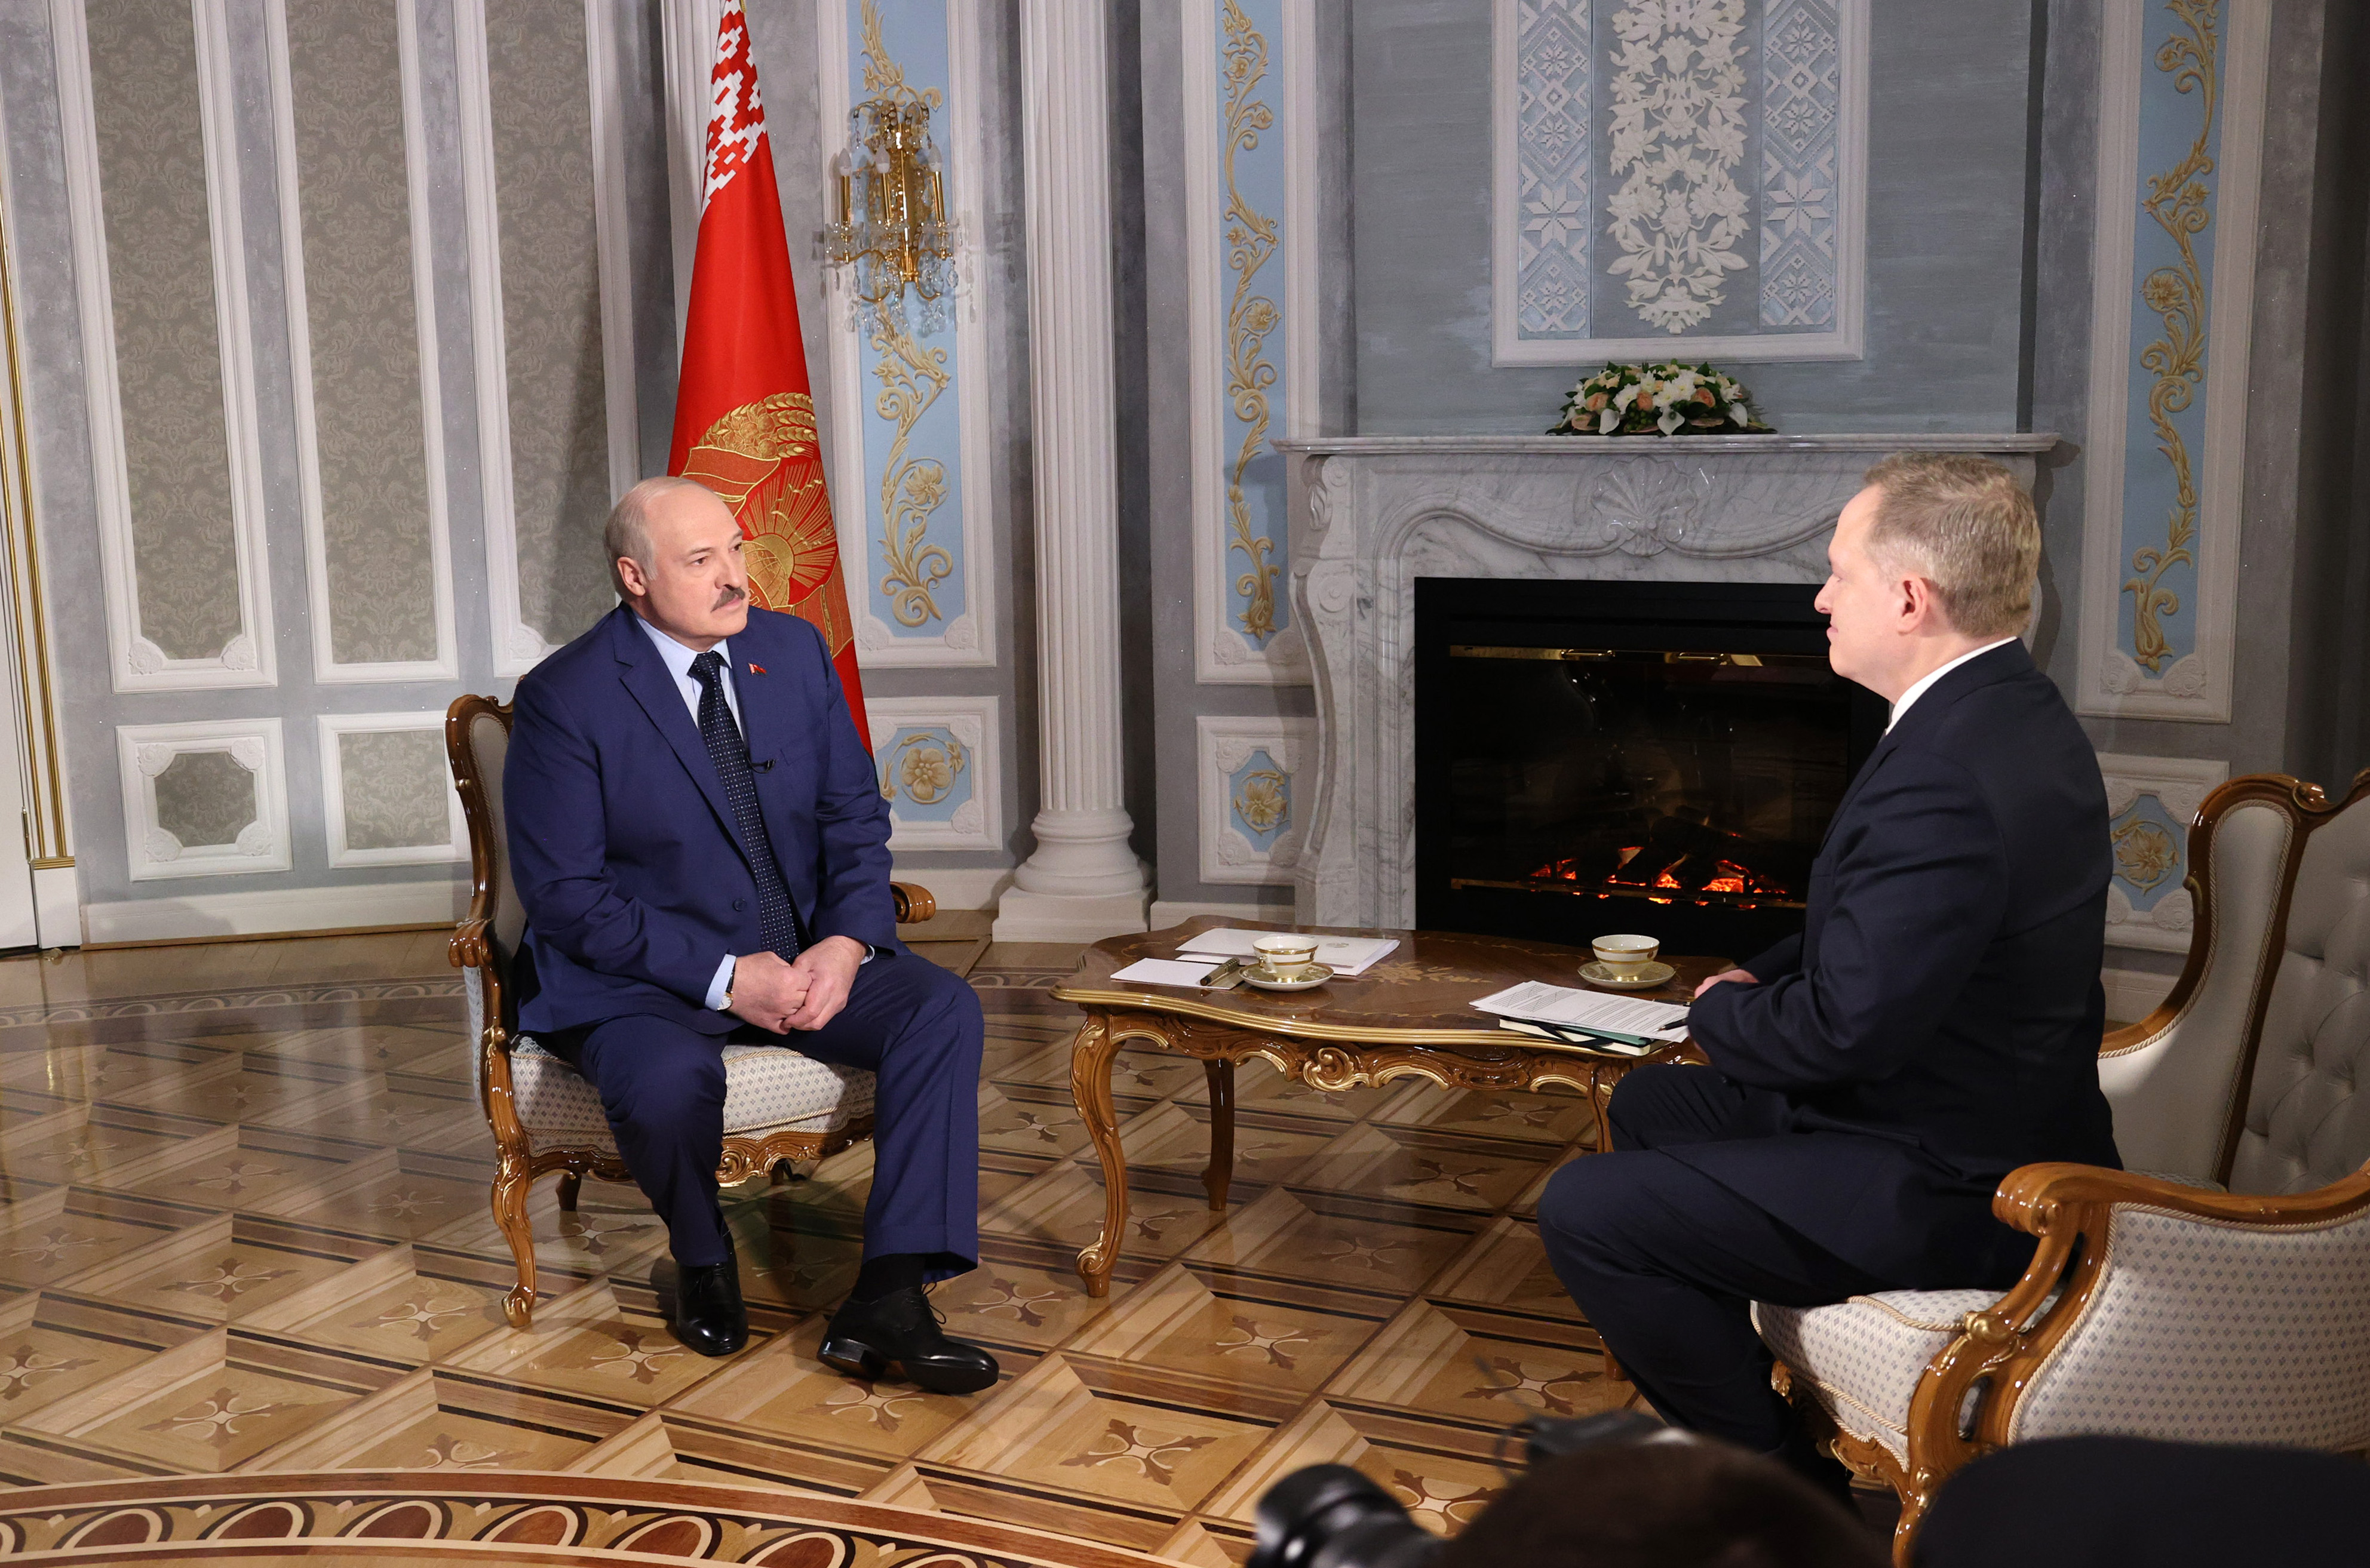 Александр Лукашенко: почему Украина не заинтересована в этих переговорах - ответ на этот вопрос можно найти в Вашингтоне